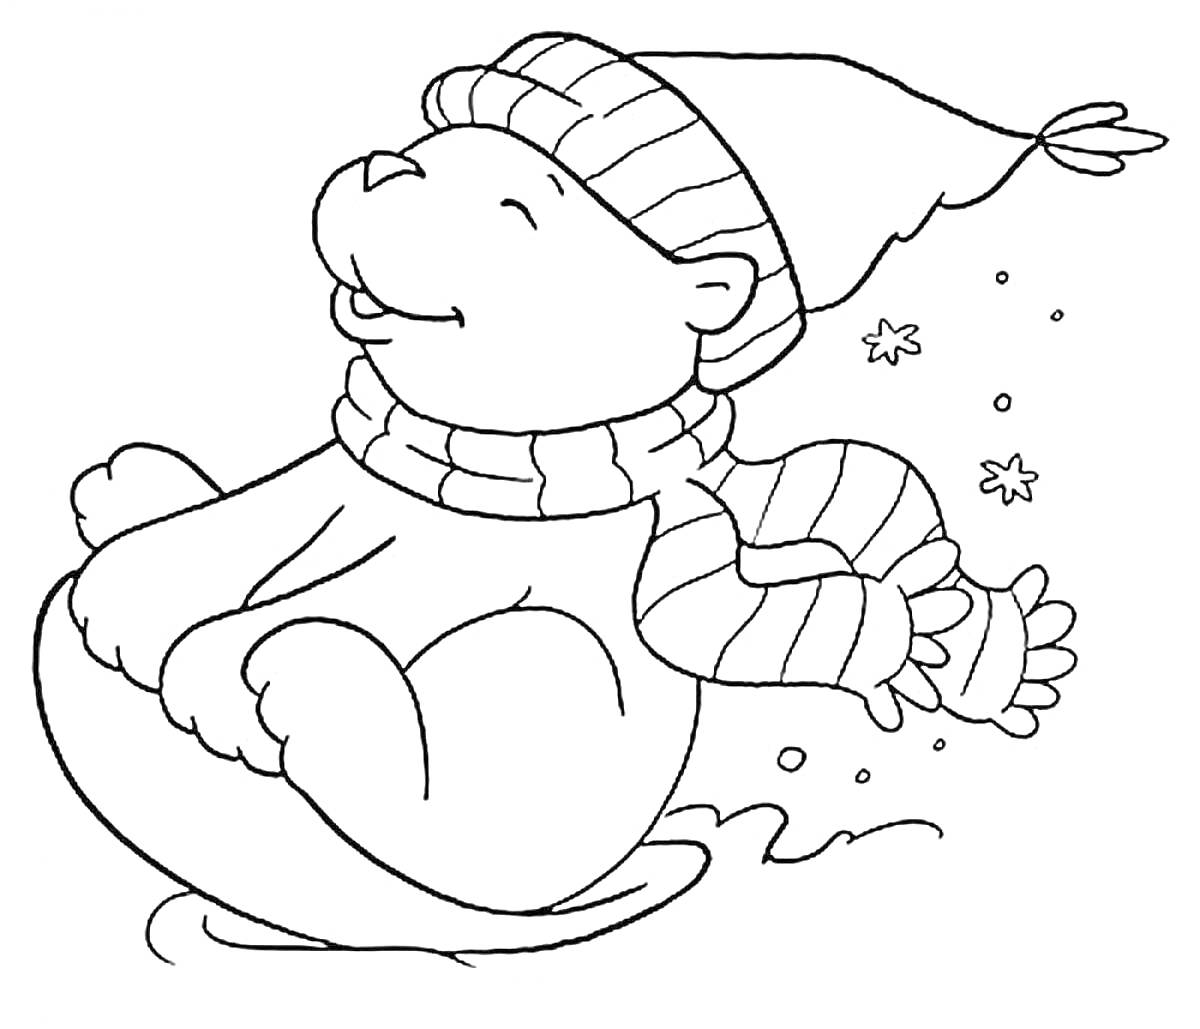 Раскраска Медвежонок в шапке и шарфе катается на санках, снежинки на заднем плане